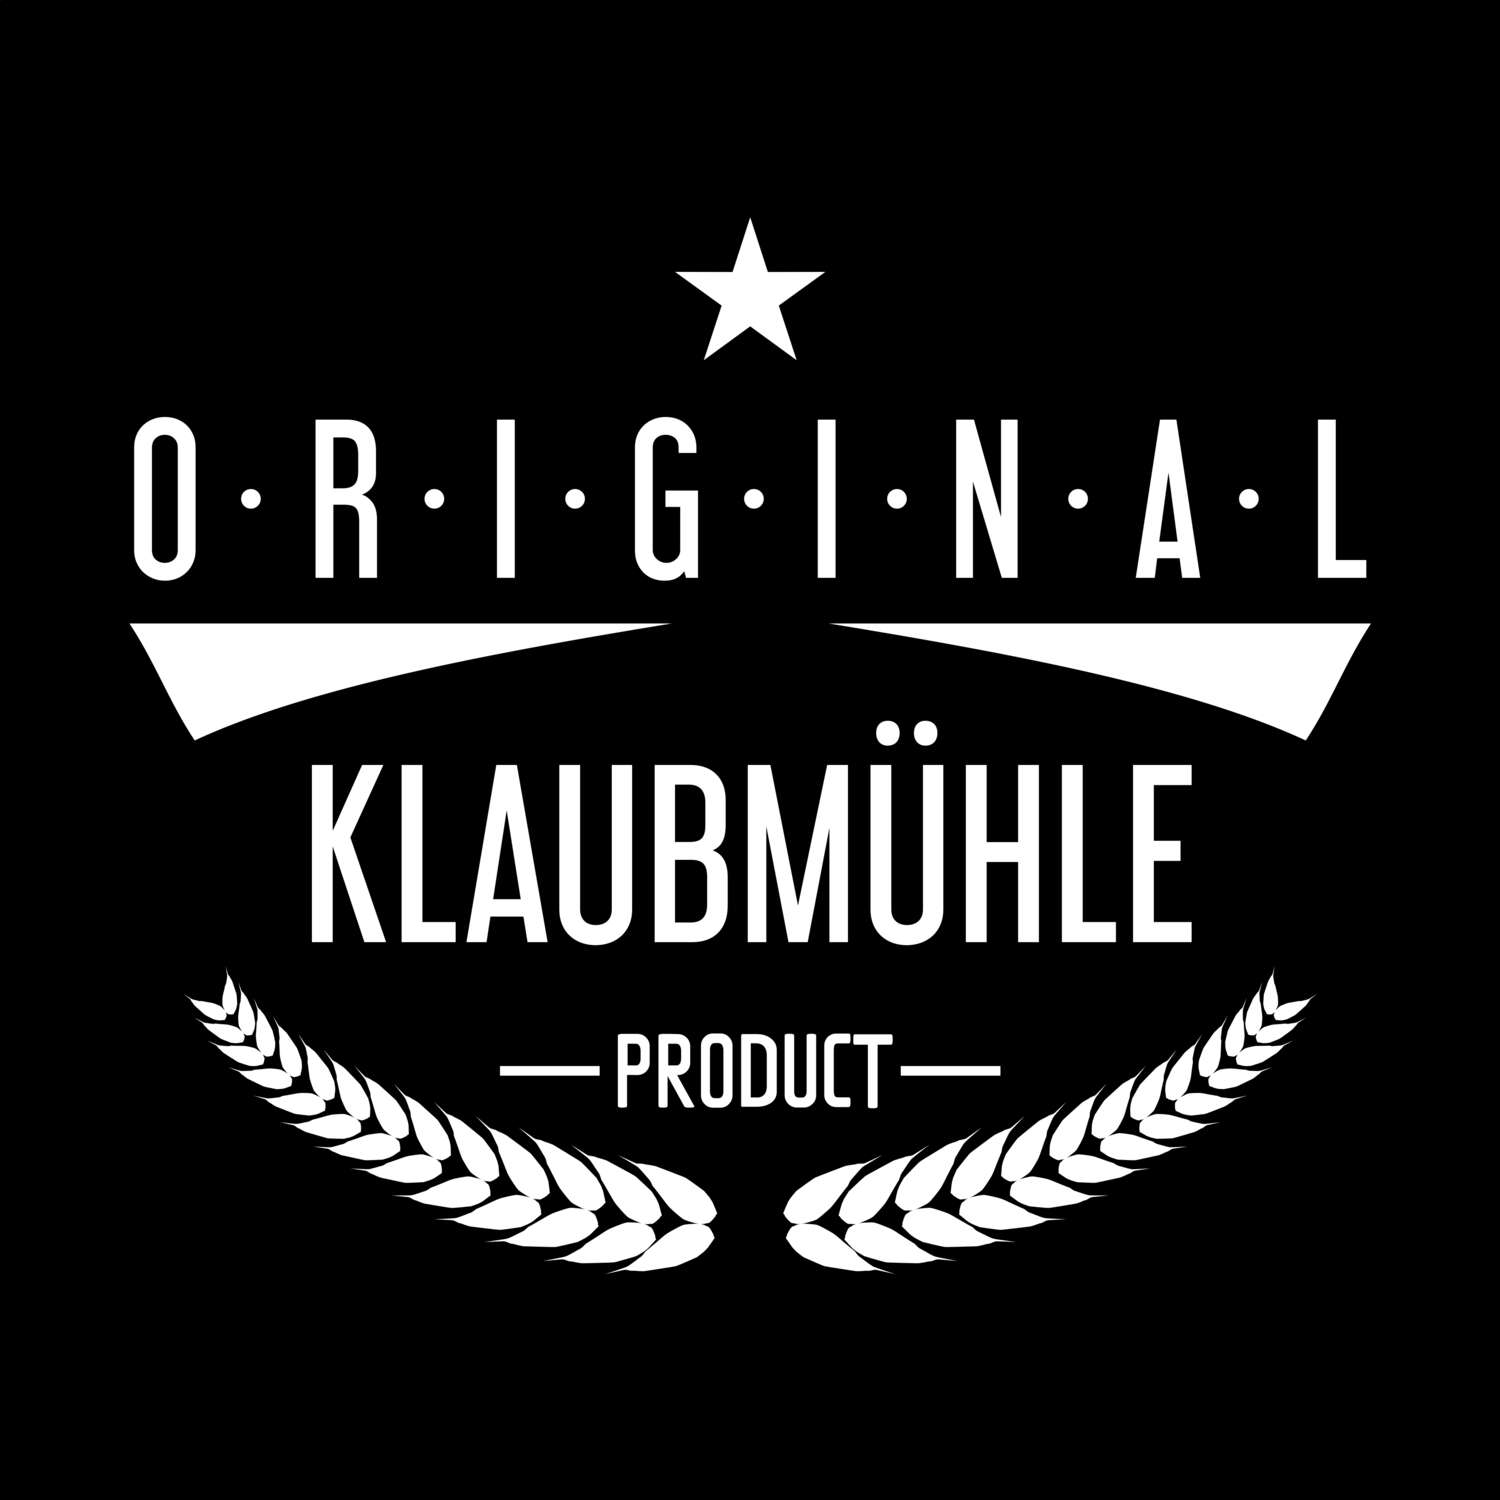 Klaubmühle T-Shirt »Original Product«